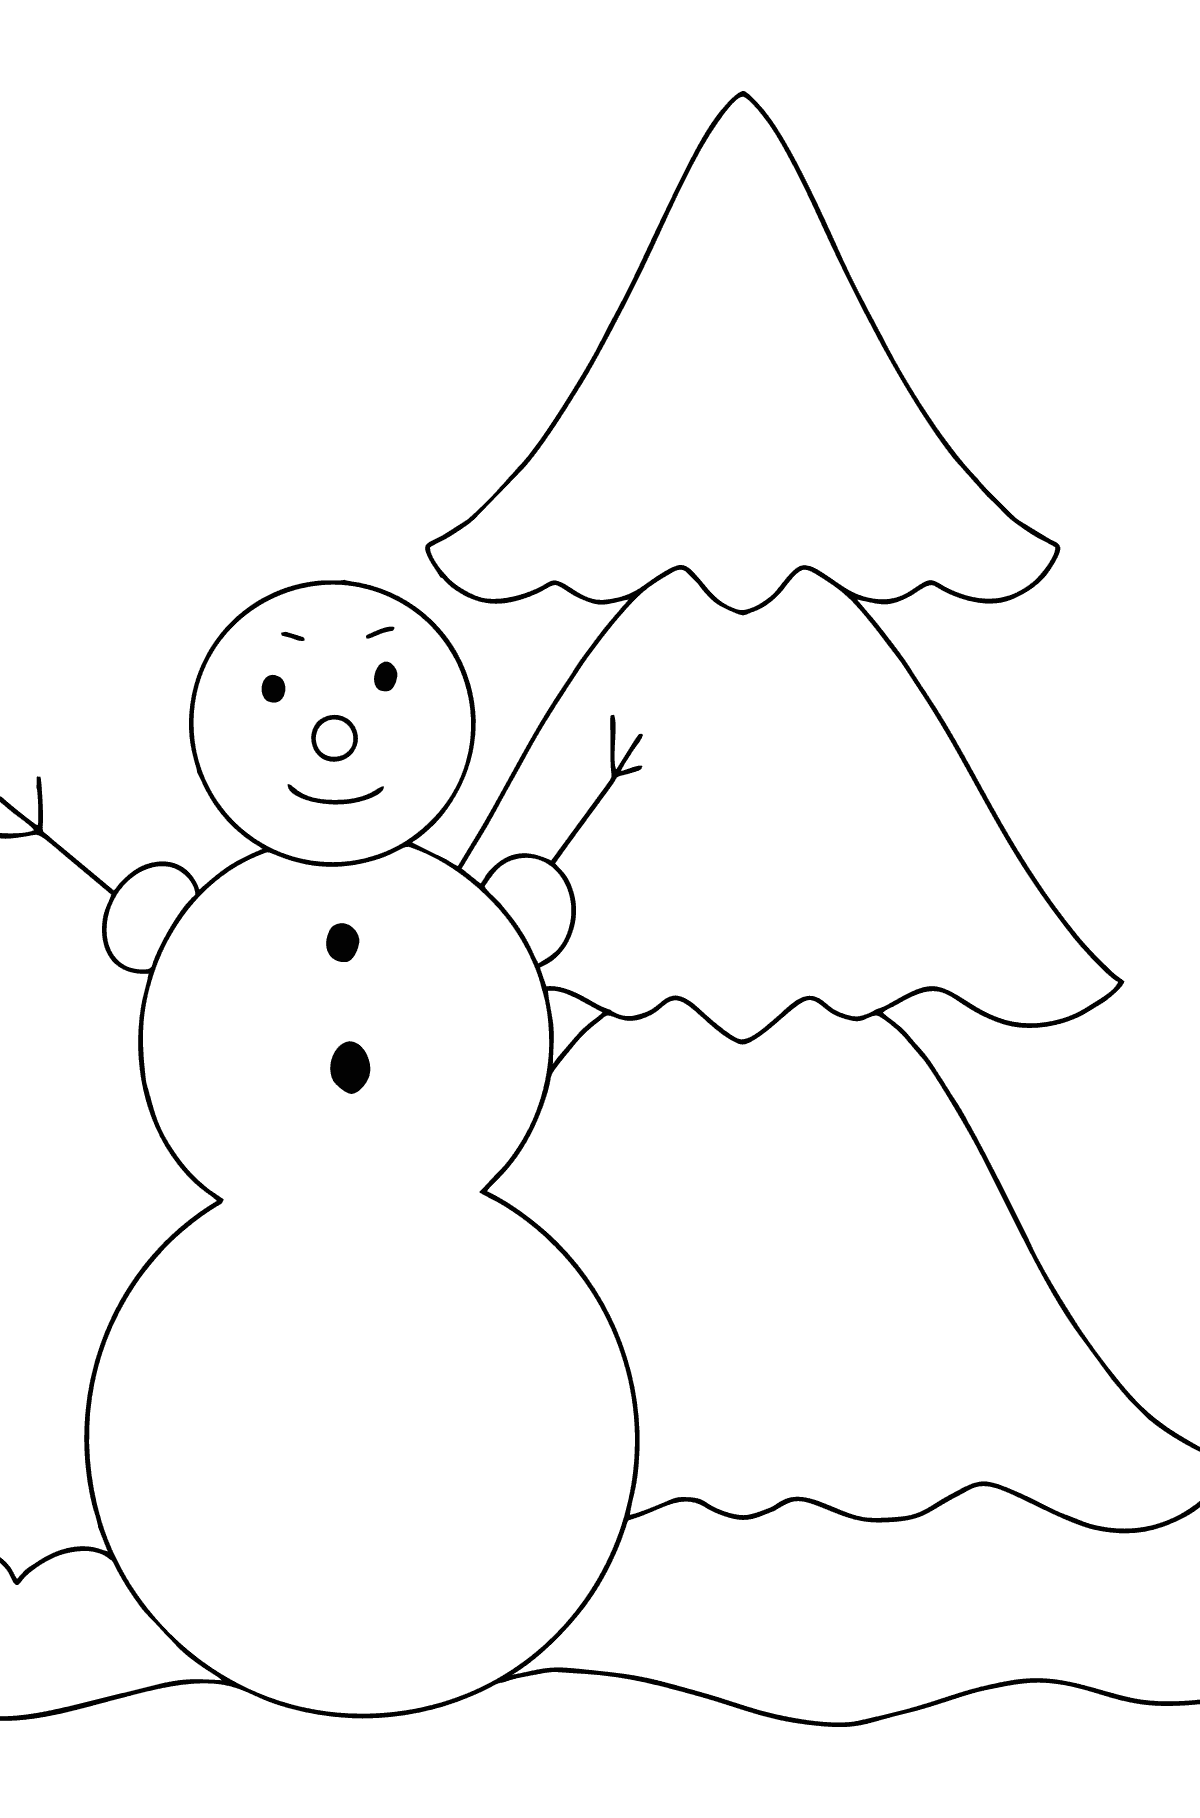 Desenho para colorir do boneco de neve e da árvore de Natal - Imagens para Colorir para Crianças